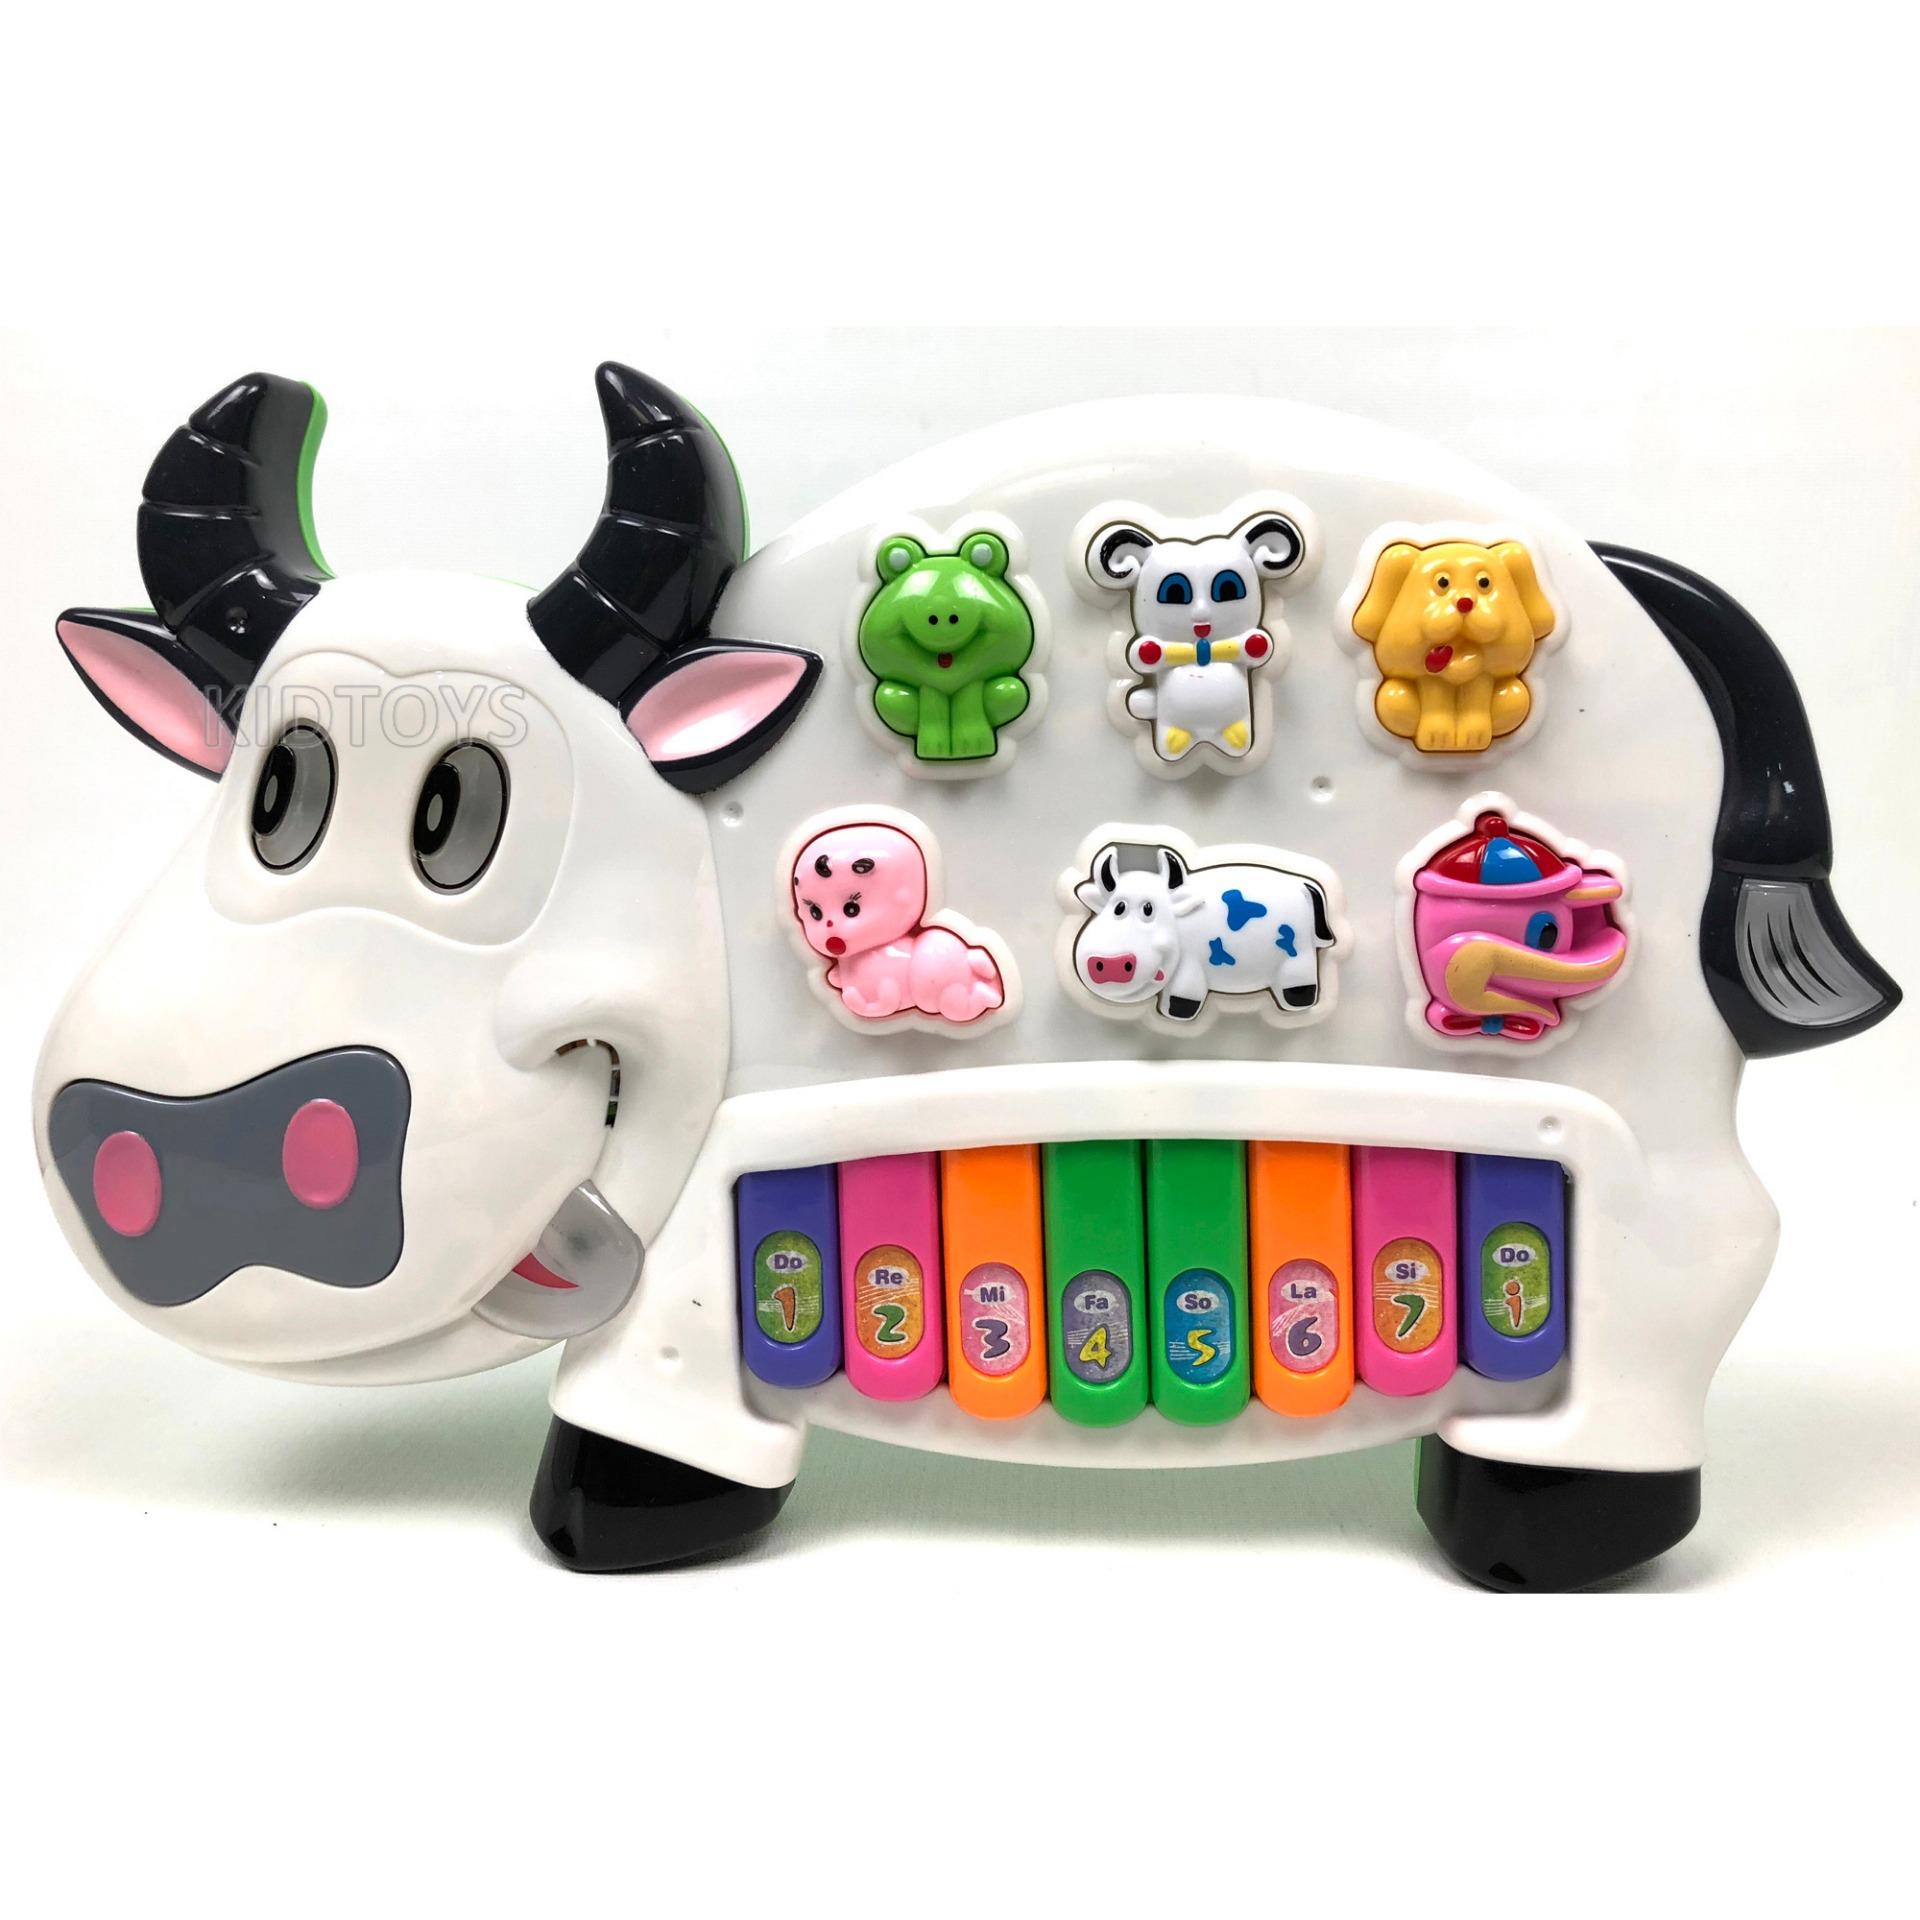 KIDTOYS ของเล่น ชุดออร์แกนรูปวัว มีเสียงสัตว์ พร้อม 7คีย์เสียง สำหรับคุณหนู